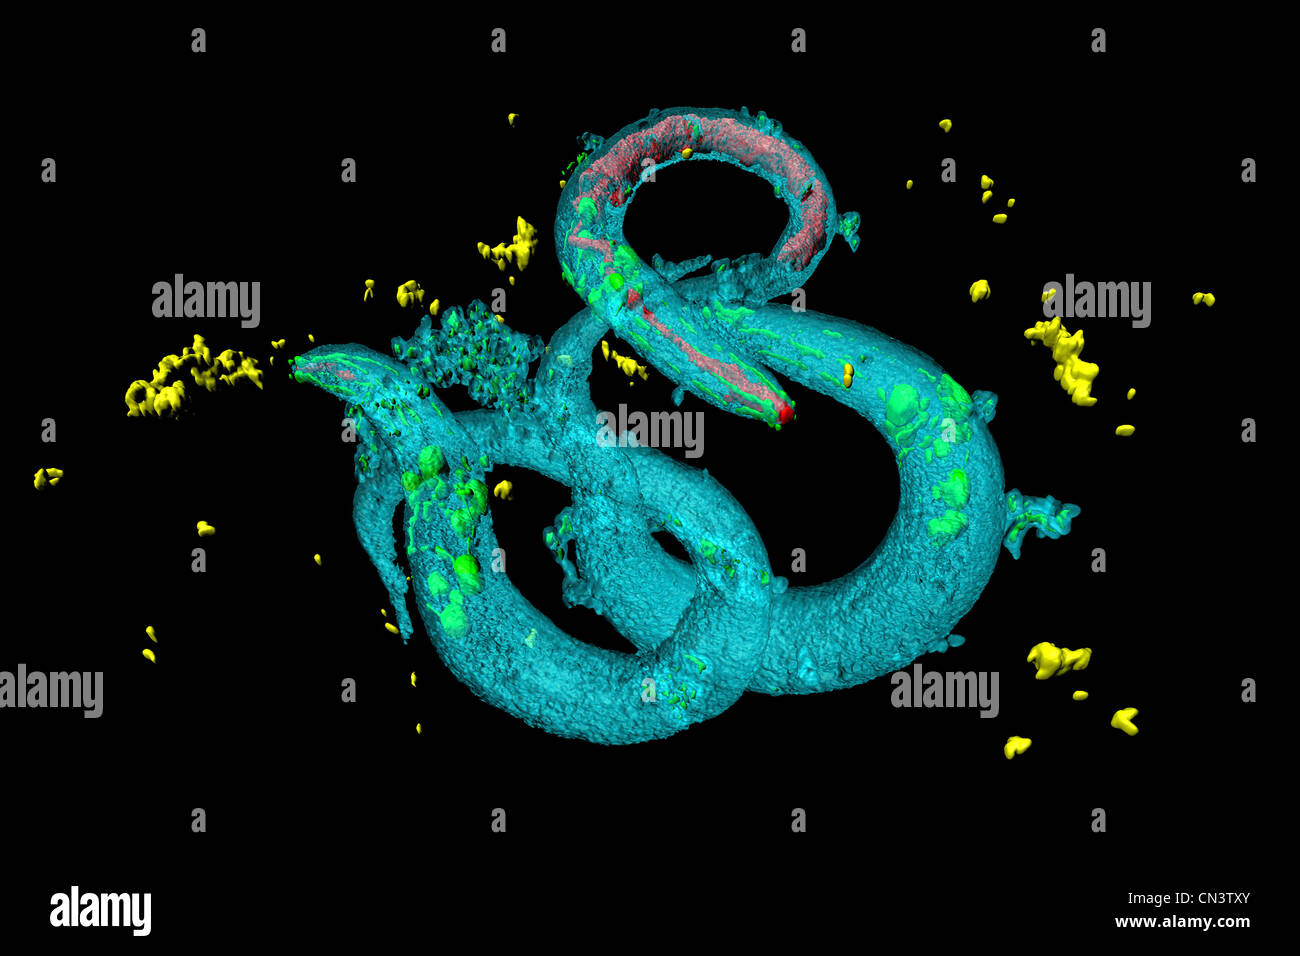 Les vers ronds (Nématodes) Caenorhabditis elegans. Banque D'Images